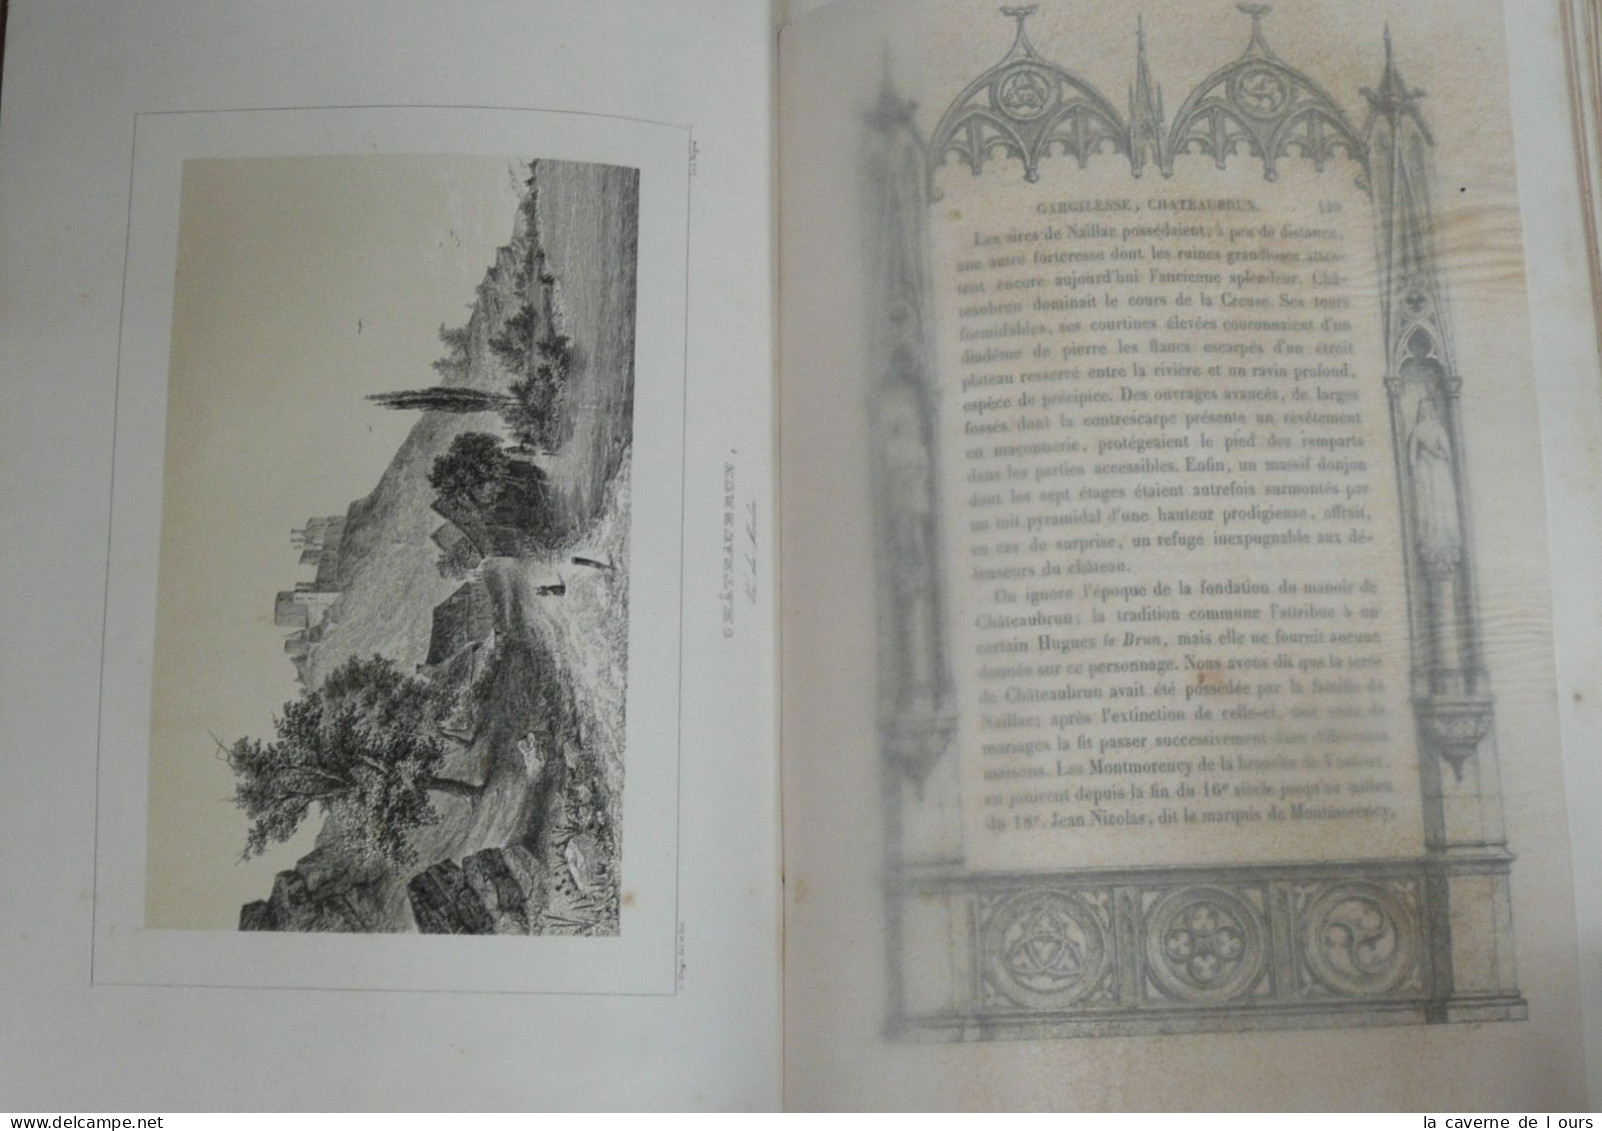 Rare livre illustré ancien, gravures, Esquisses Pittoresques, Indre 36, 1854